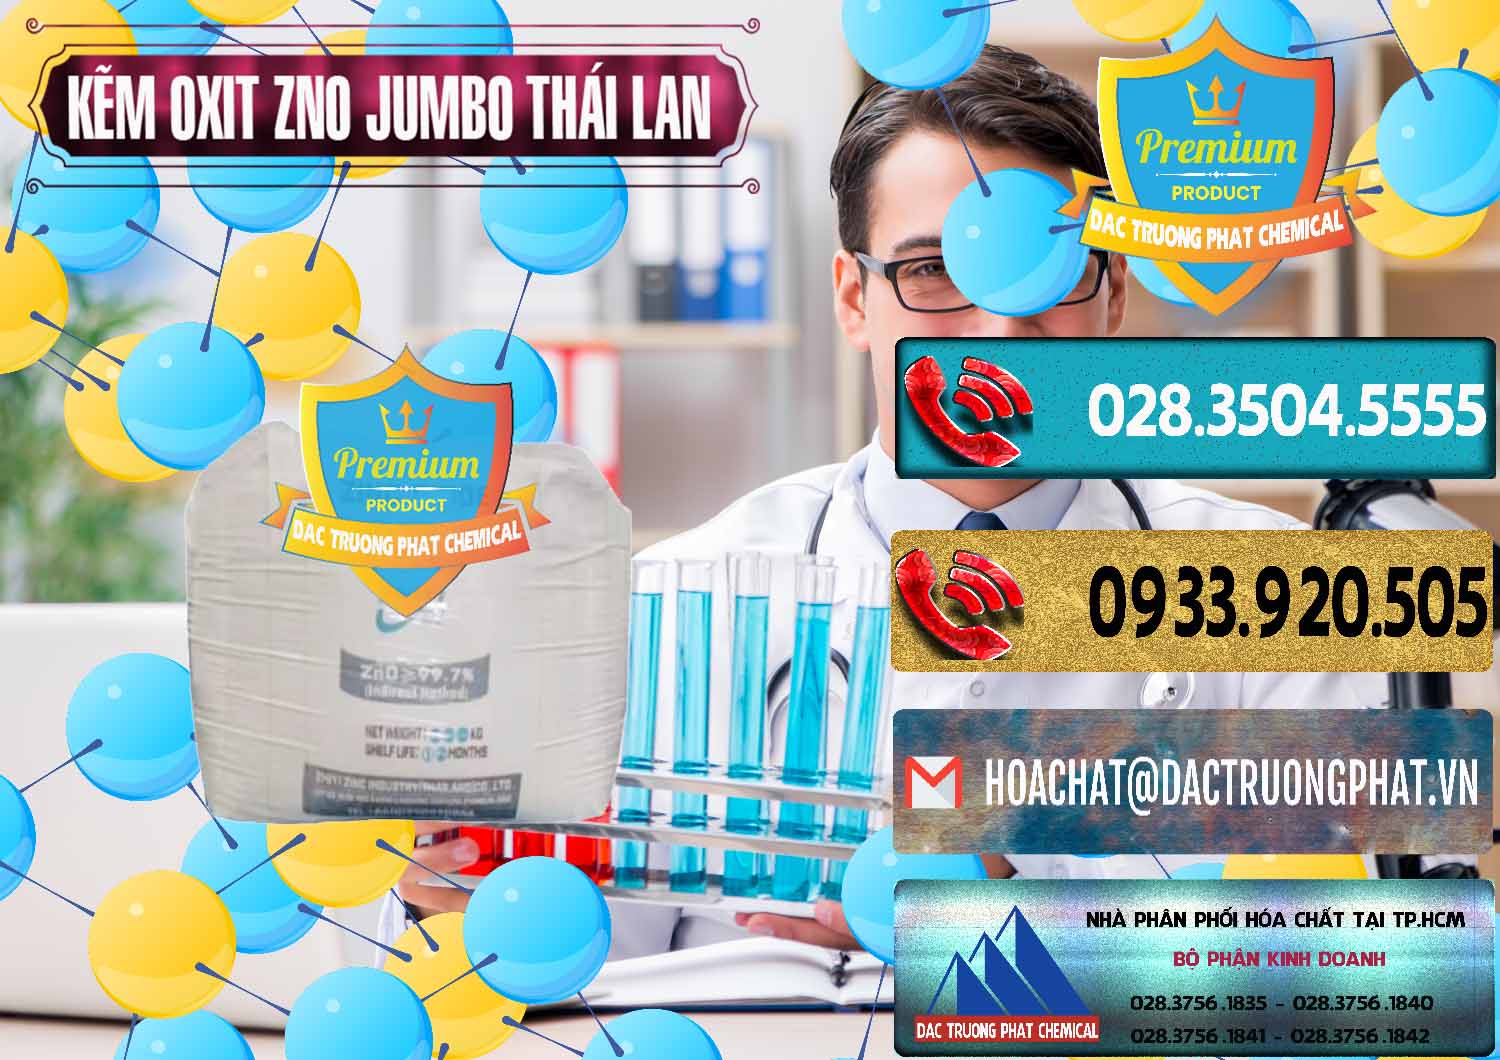 Nhà nhập khẩu _ bán Zinc Oxide - Bột Kẽm Oxit ZNO Jumbo Bành Thái Lan Thailand - 0370 - Đơn vị nhập khẩu và cung cấp hóa chất tại TP.HCM - hoachatdetnhuom.com